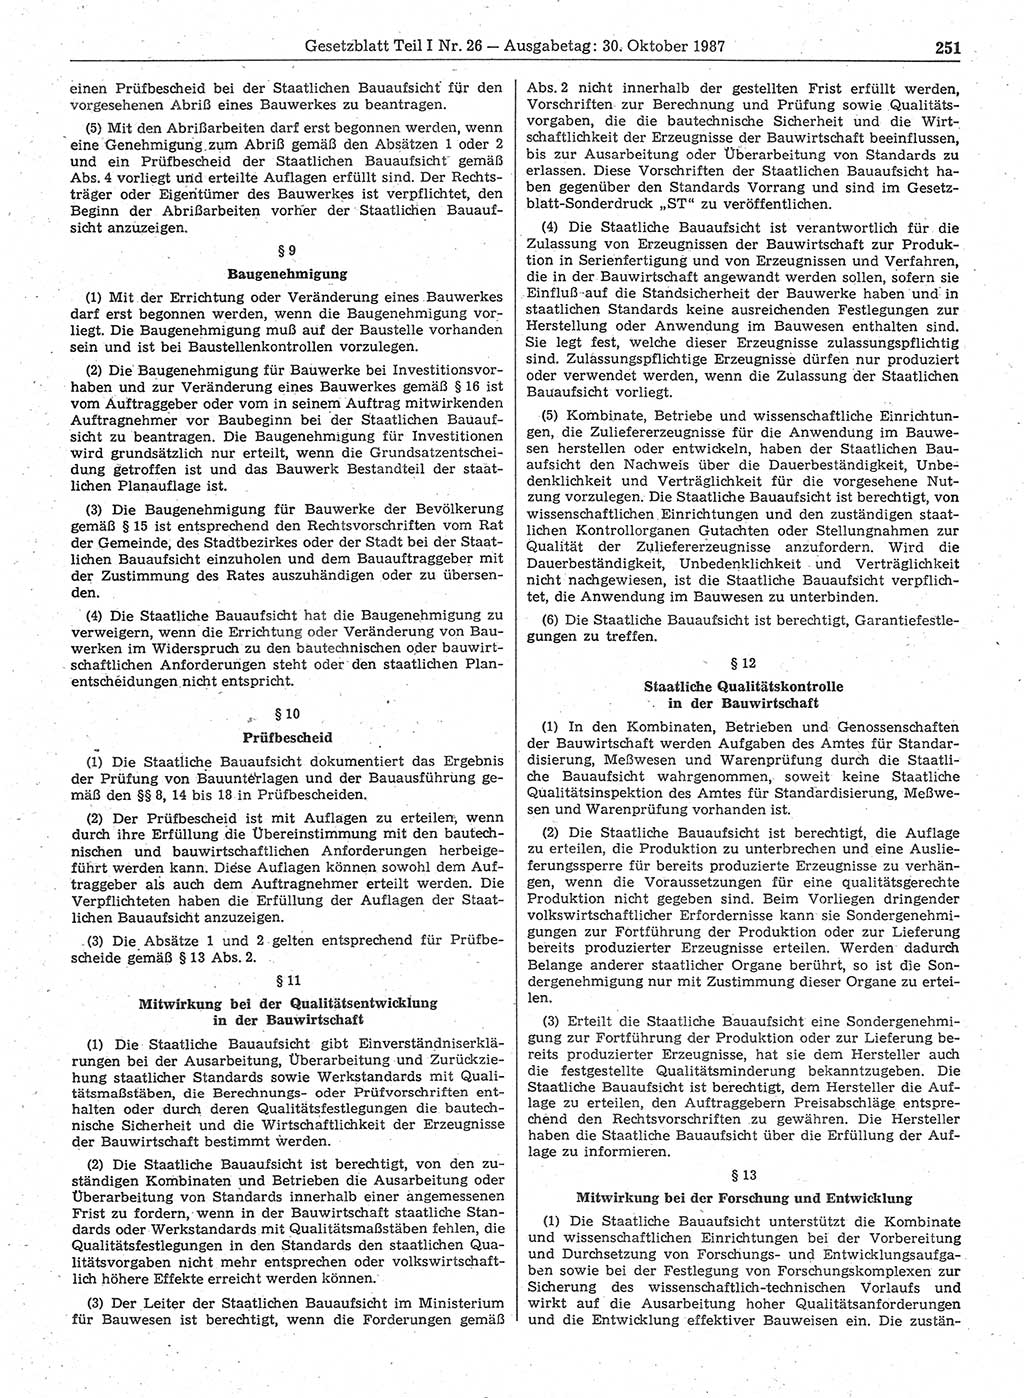 Gesetzblatt (GBl.) der Deutschen Demokratischen Republik (DDR) Teil Ⅰ 1987, Seite 251 (GBl. DDR Ⅰ 1987, S. 251)